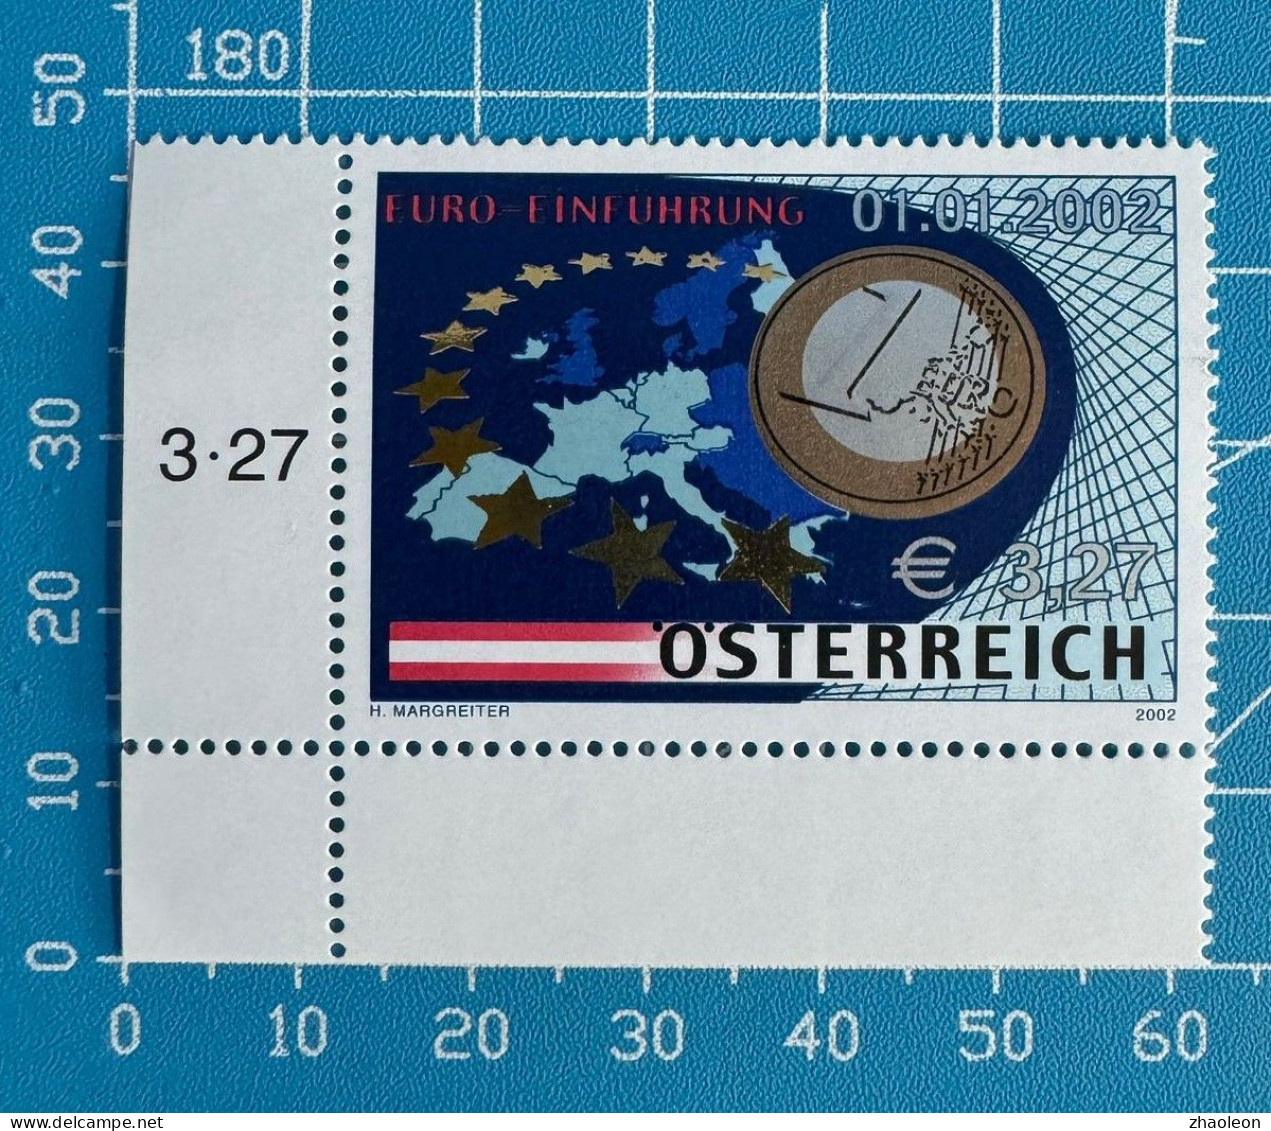 EURO-Einführung/ EURO Introduction Austria 2368 - Ungebraucht